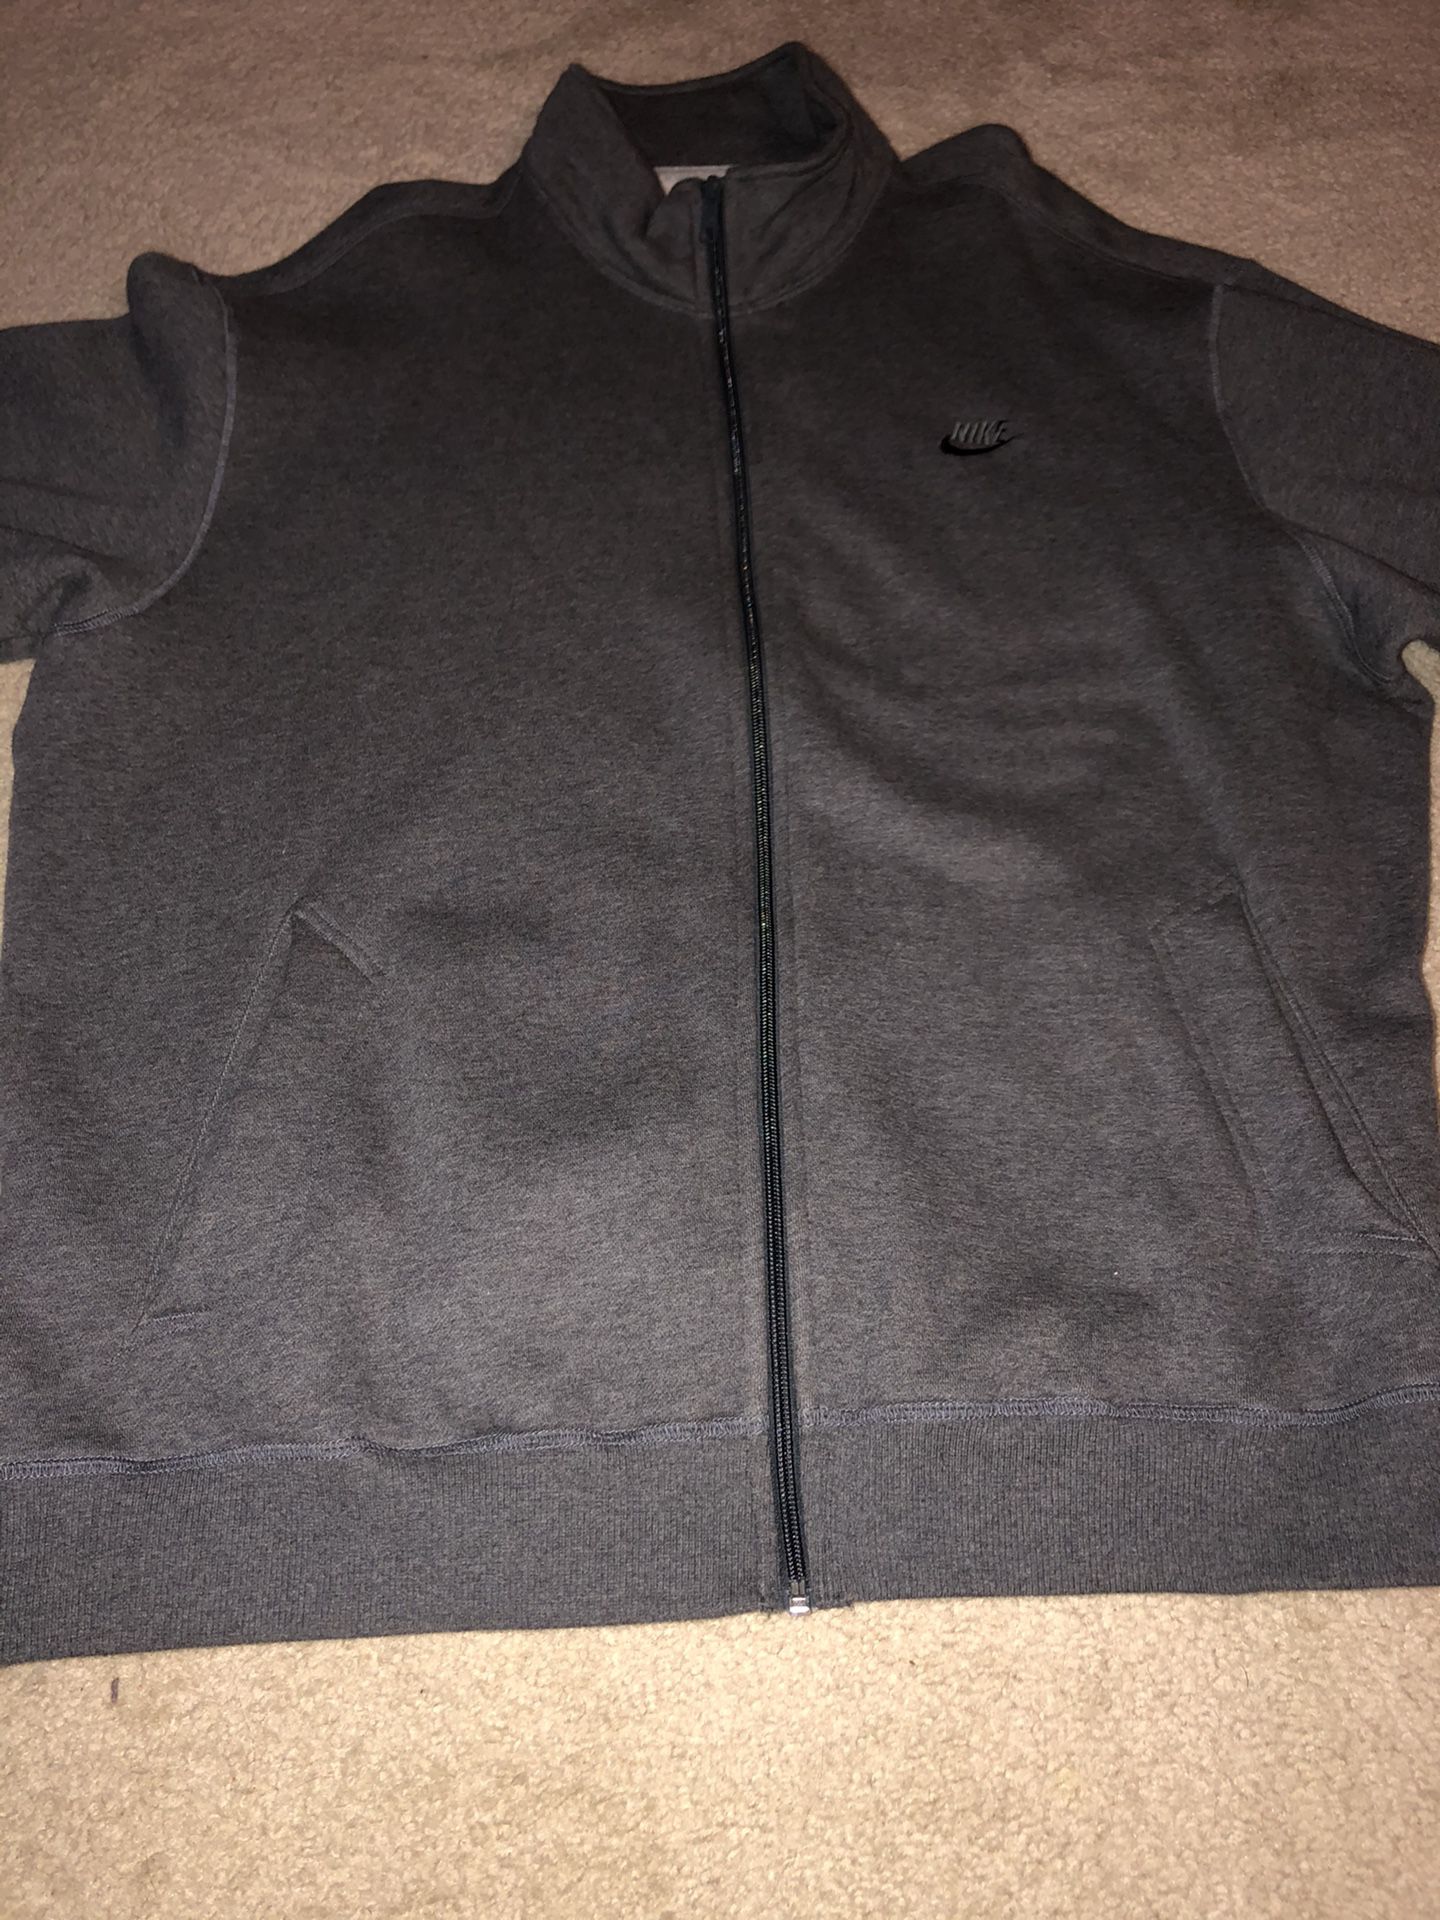 Nike zip up sweat jacket XXL